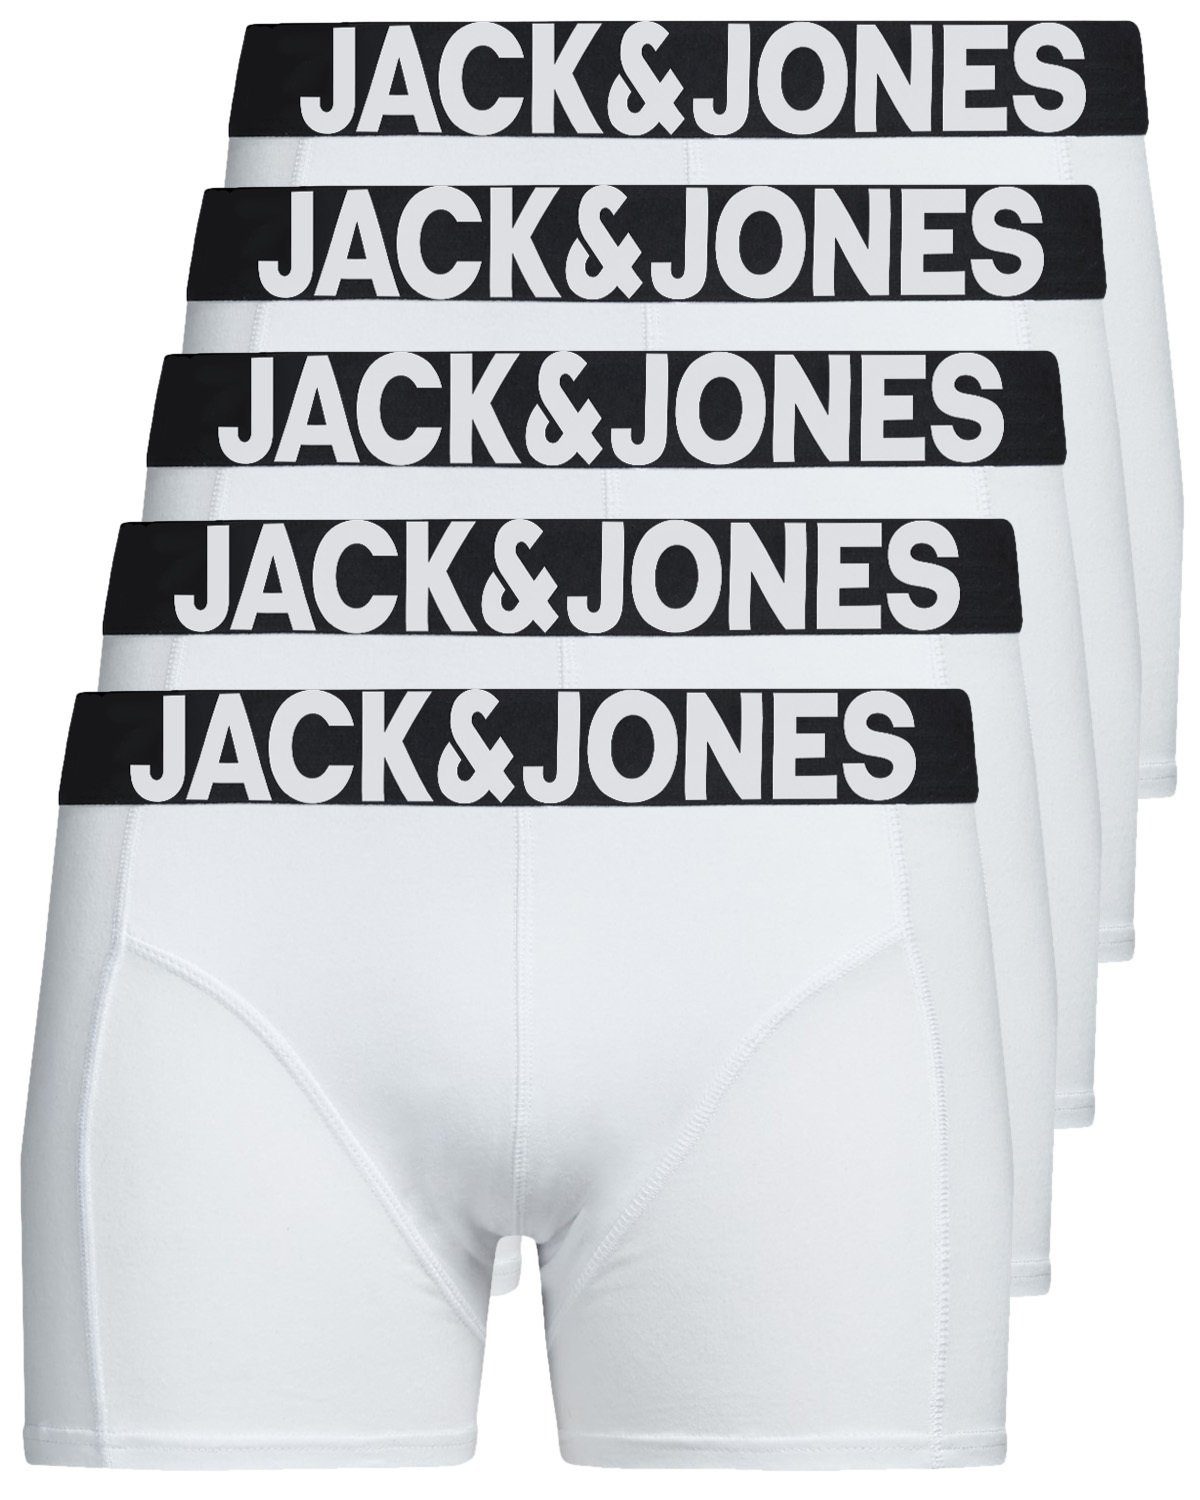 Jack & Jones Boxershorts Solid (5-St., 5er Pack) gute Passform durch elastische Baumwollqualität weiß